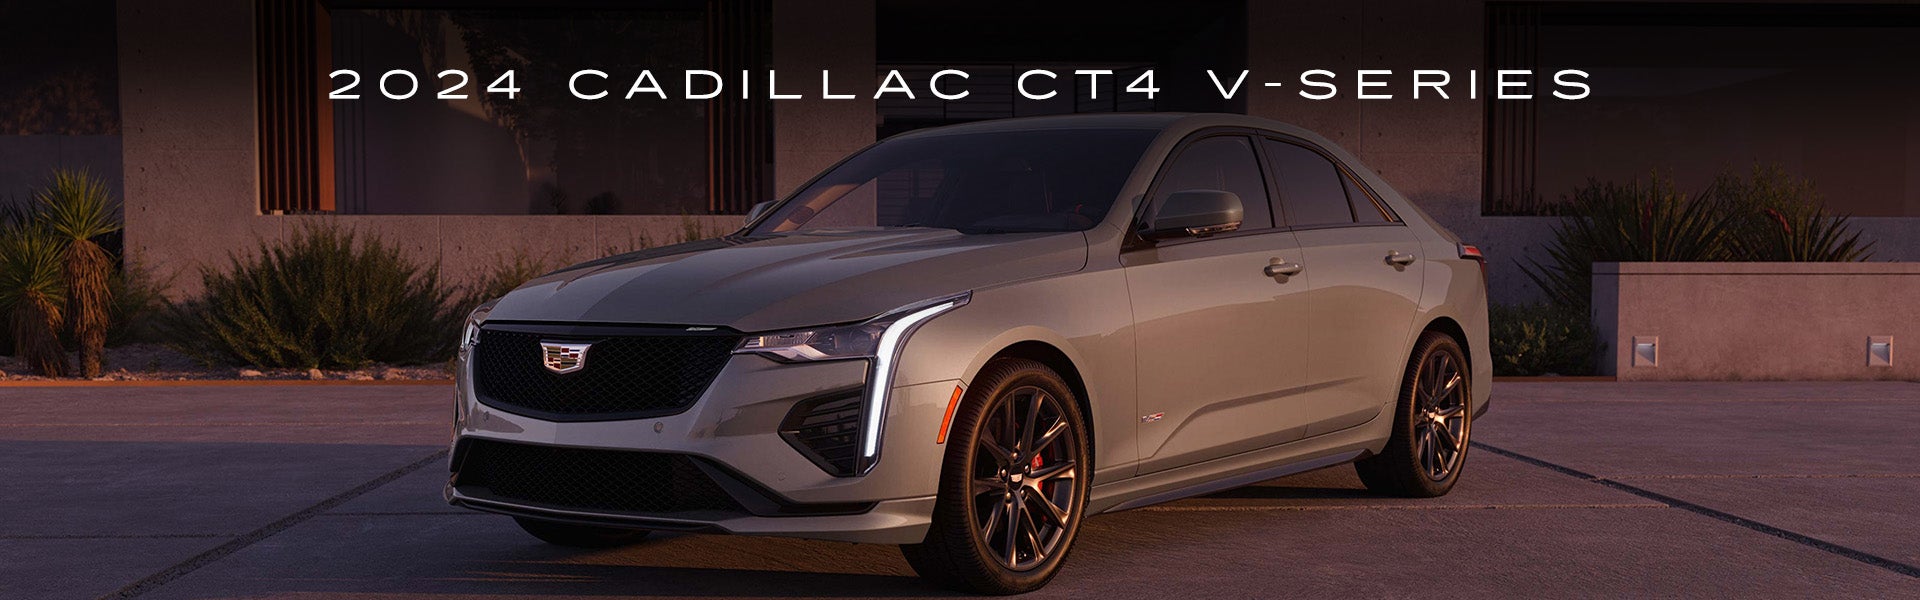 Cadillac CT4 V-Series